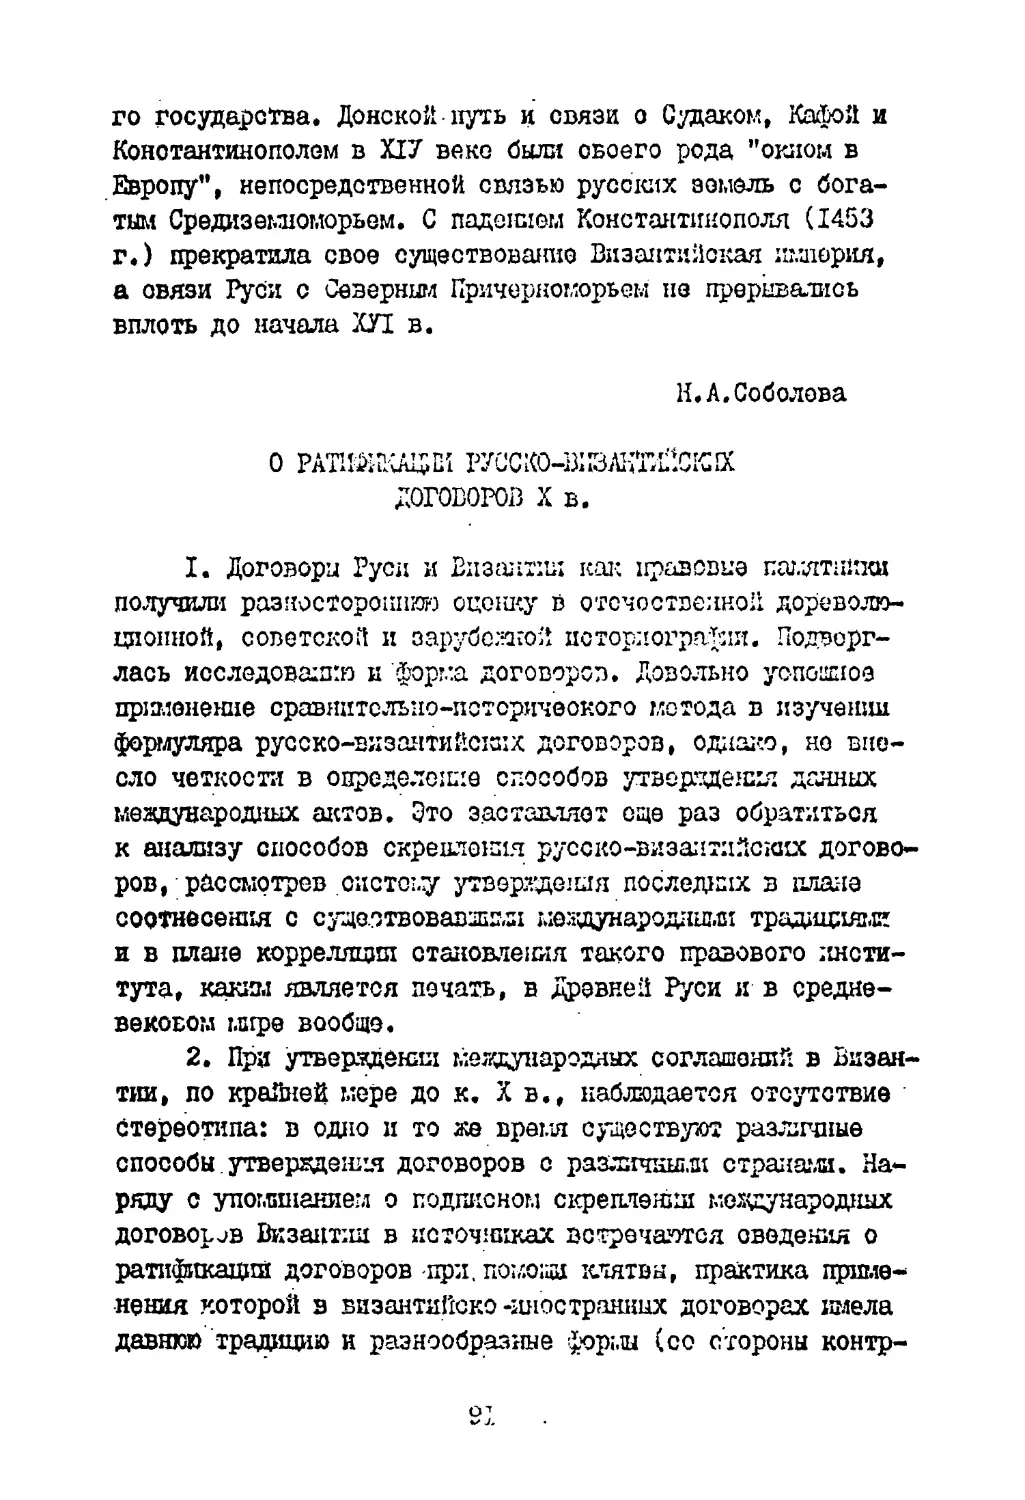 Соболева Н.А. О ратификации русско-византийских договоров X в